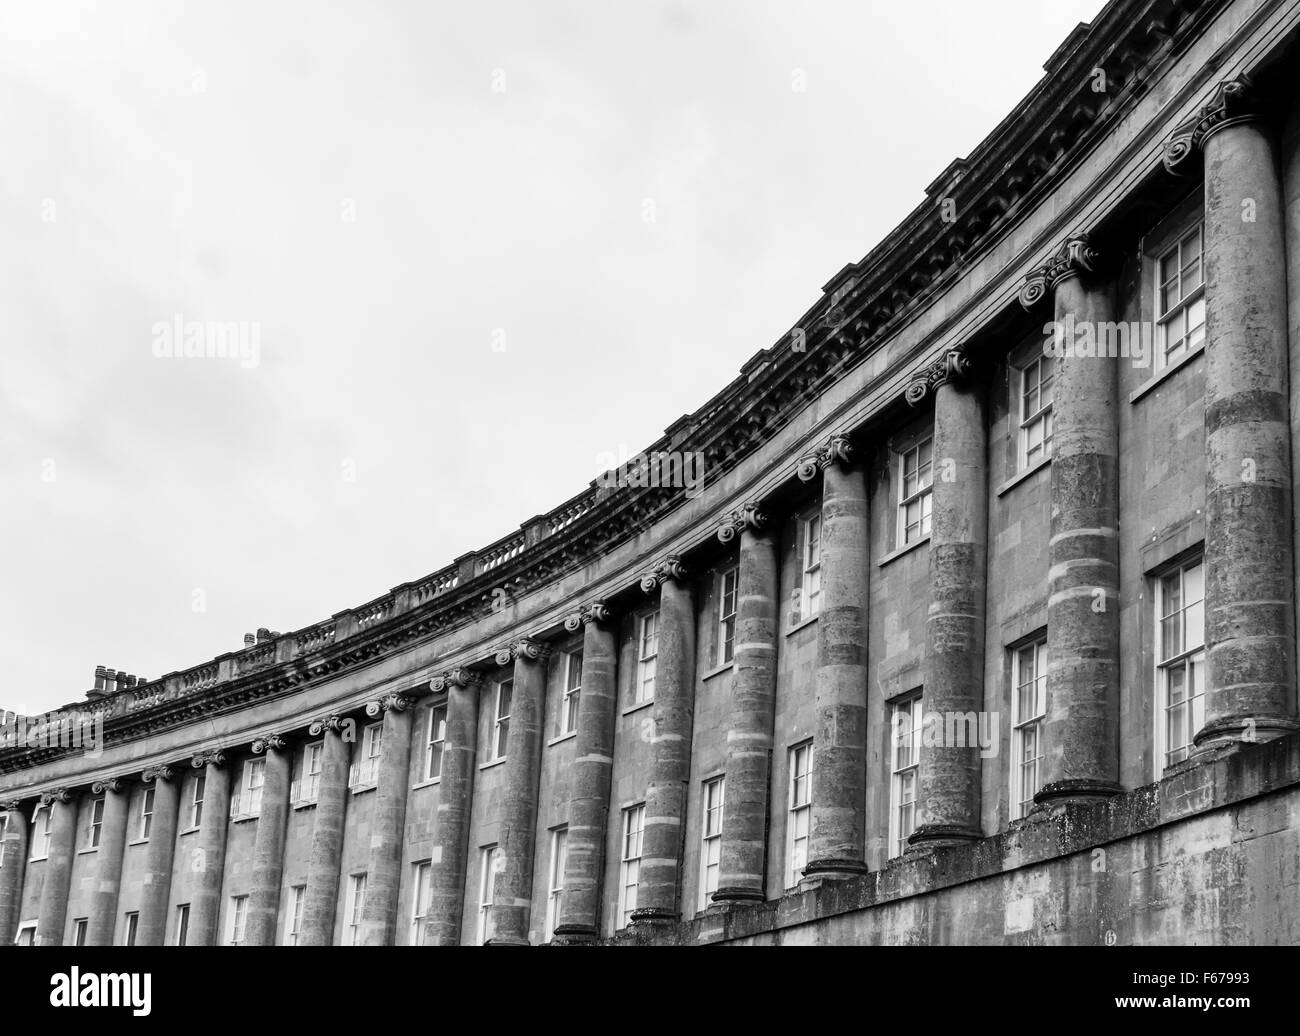 Royal Crescent, Bad in schwarz und weiß Stockfoto